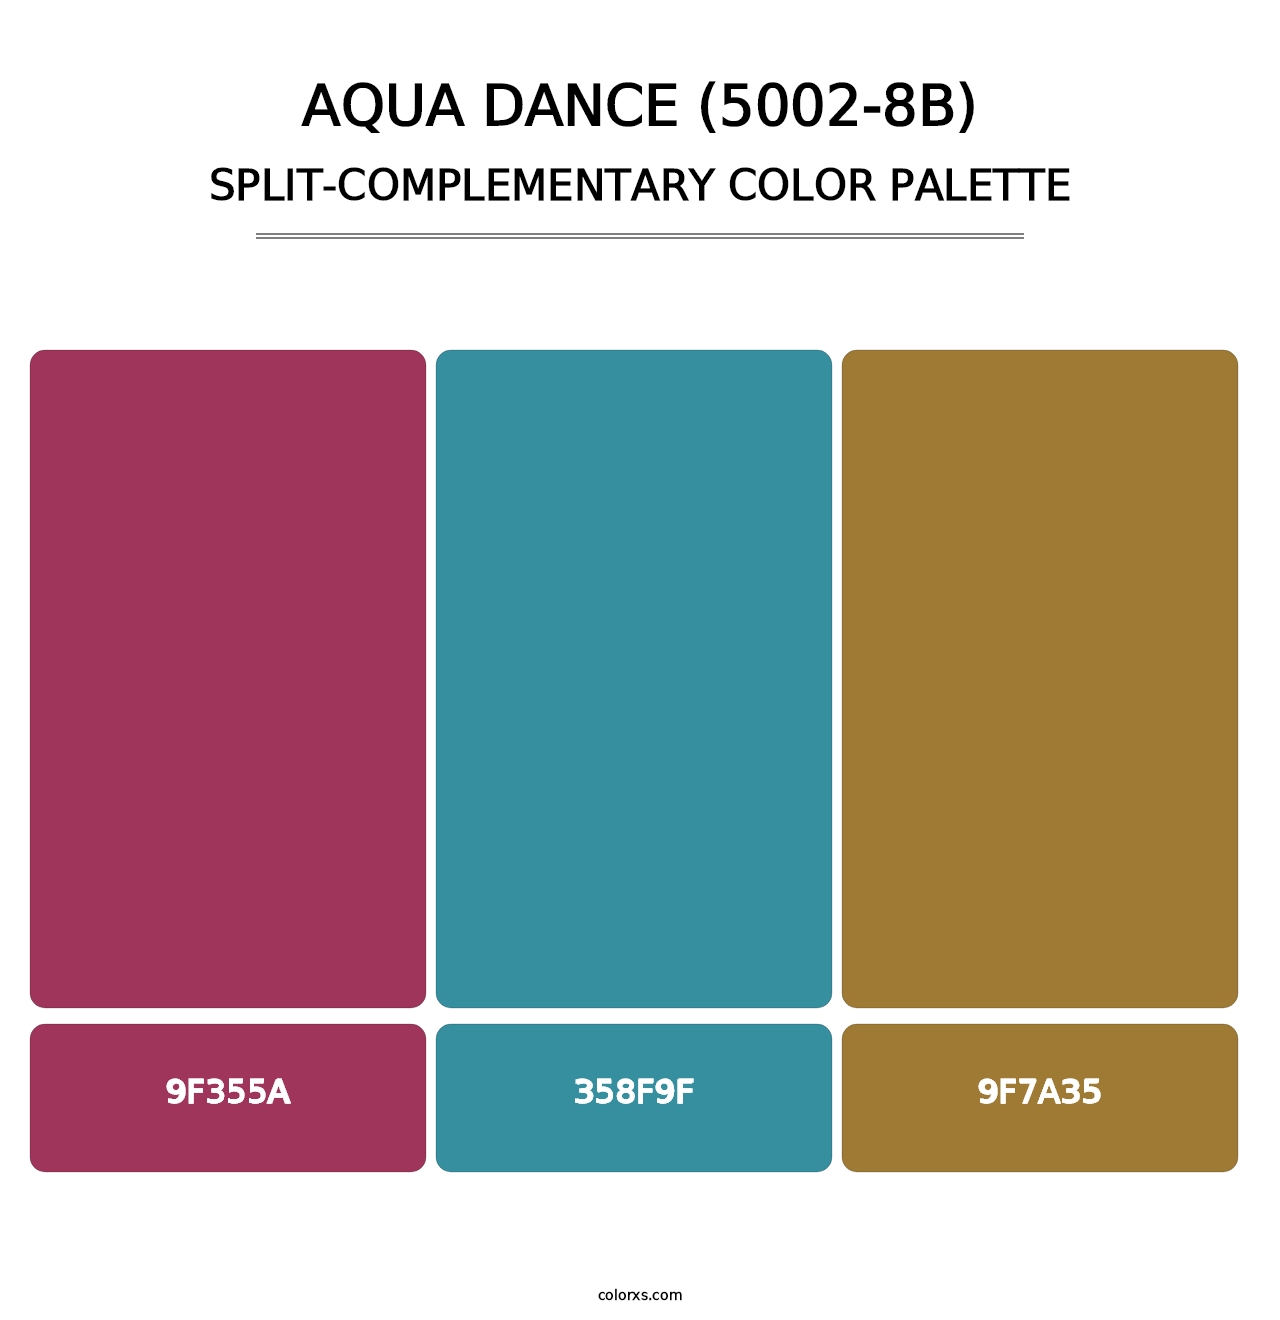 Aqua Dance (5002-8B) - Split-Complementary Color Palette